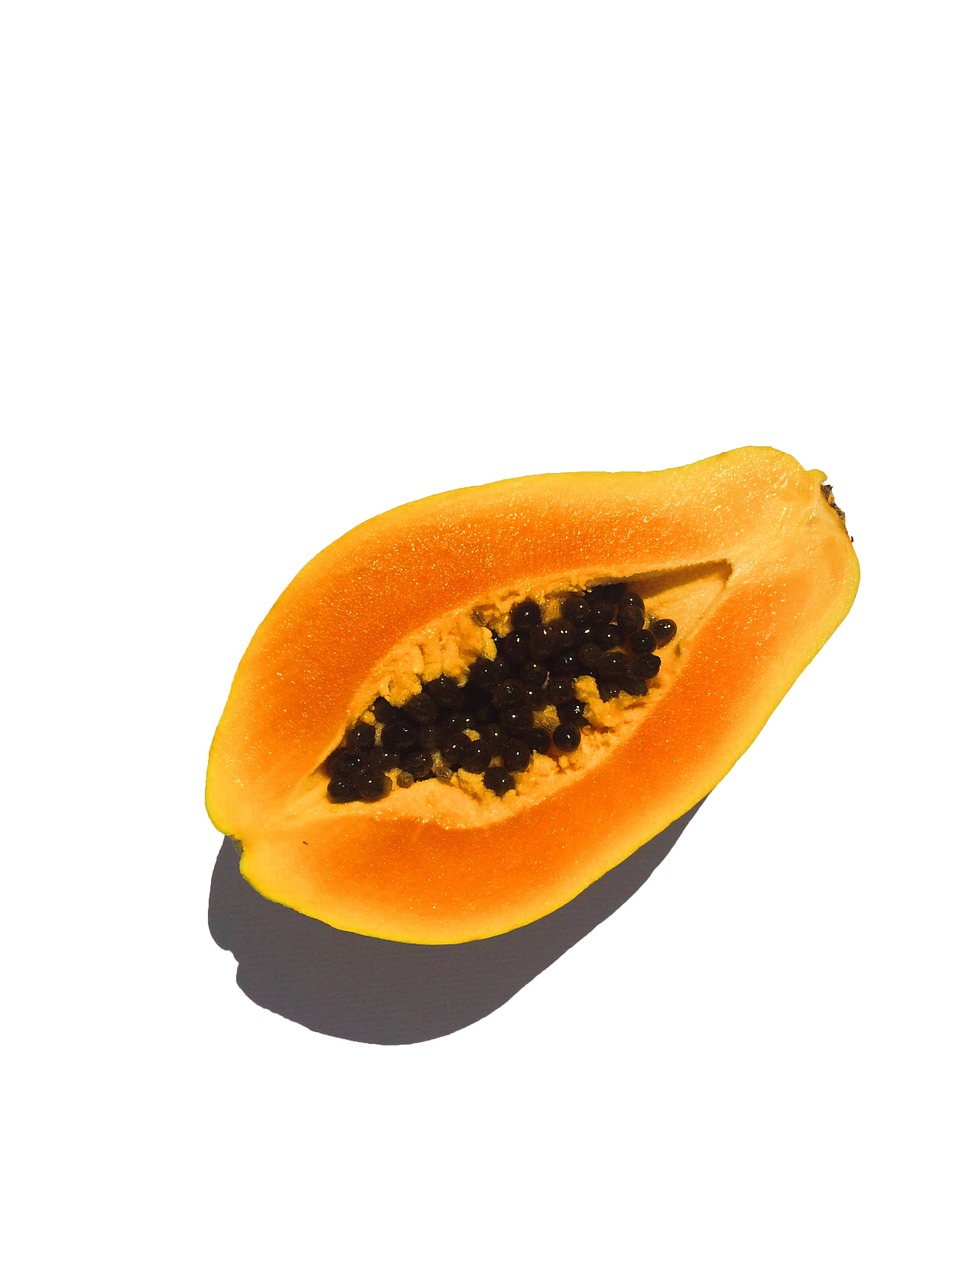 fruit papaya cut in half free photo